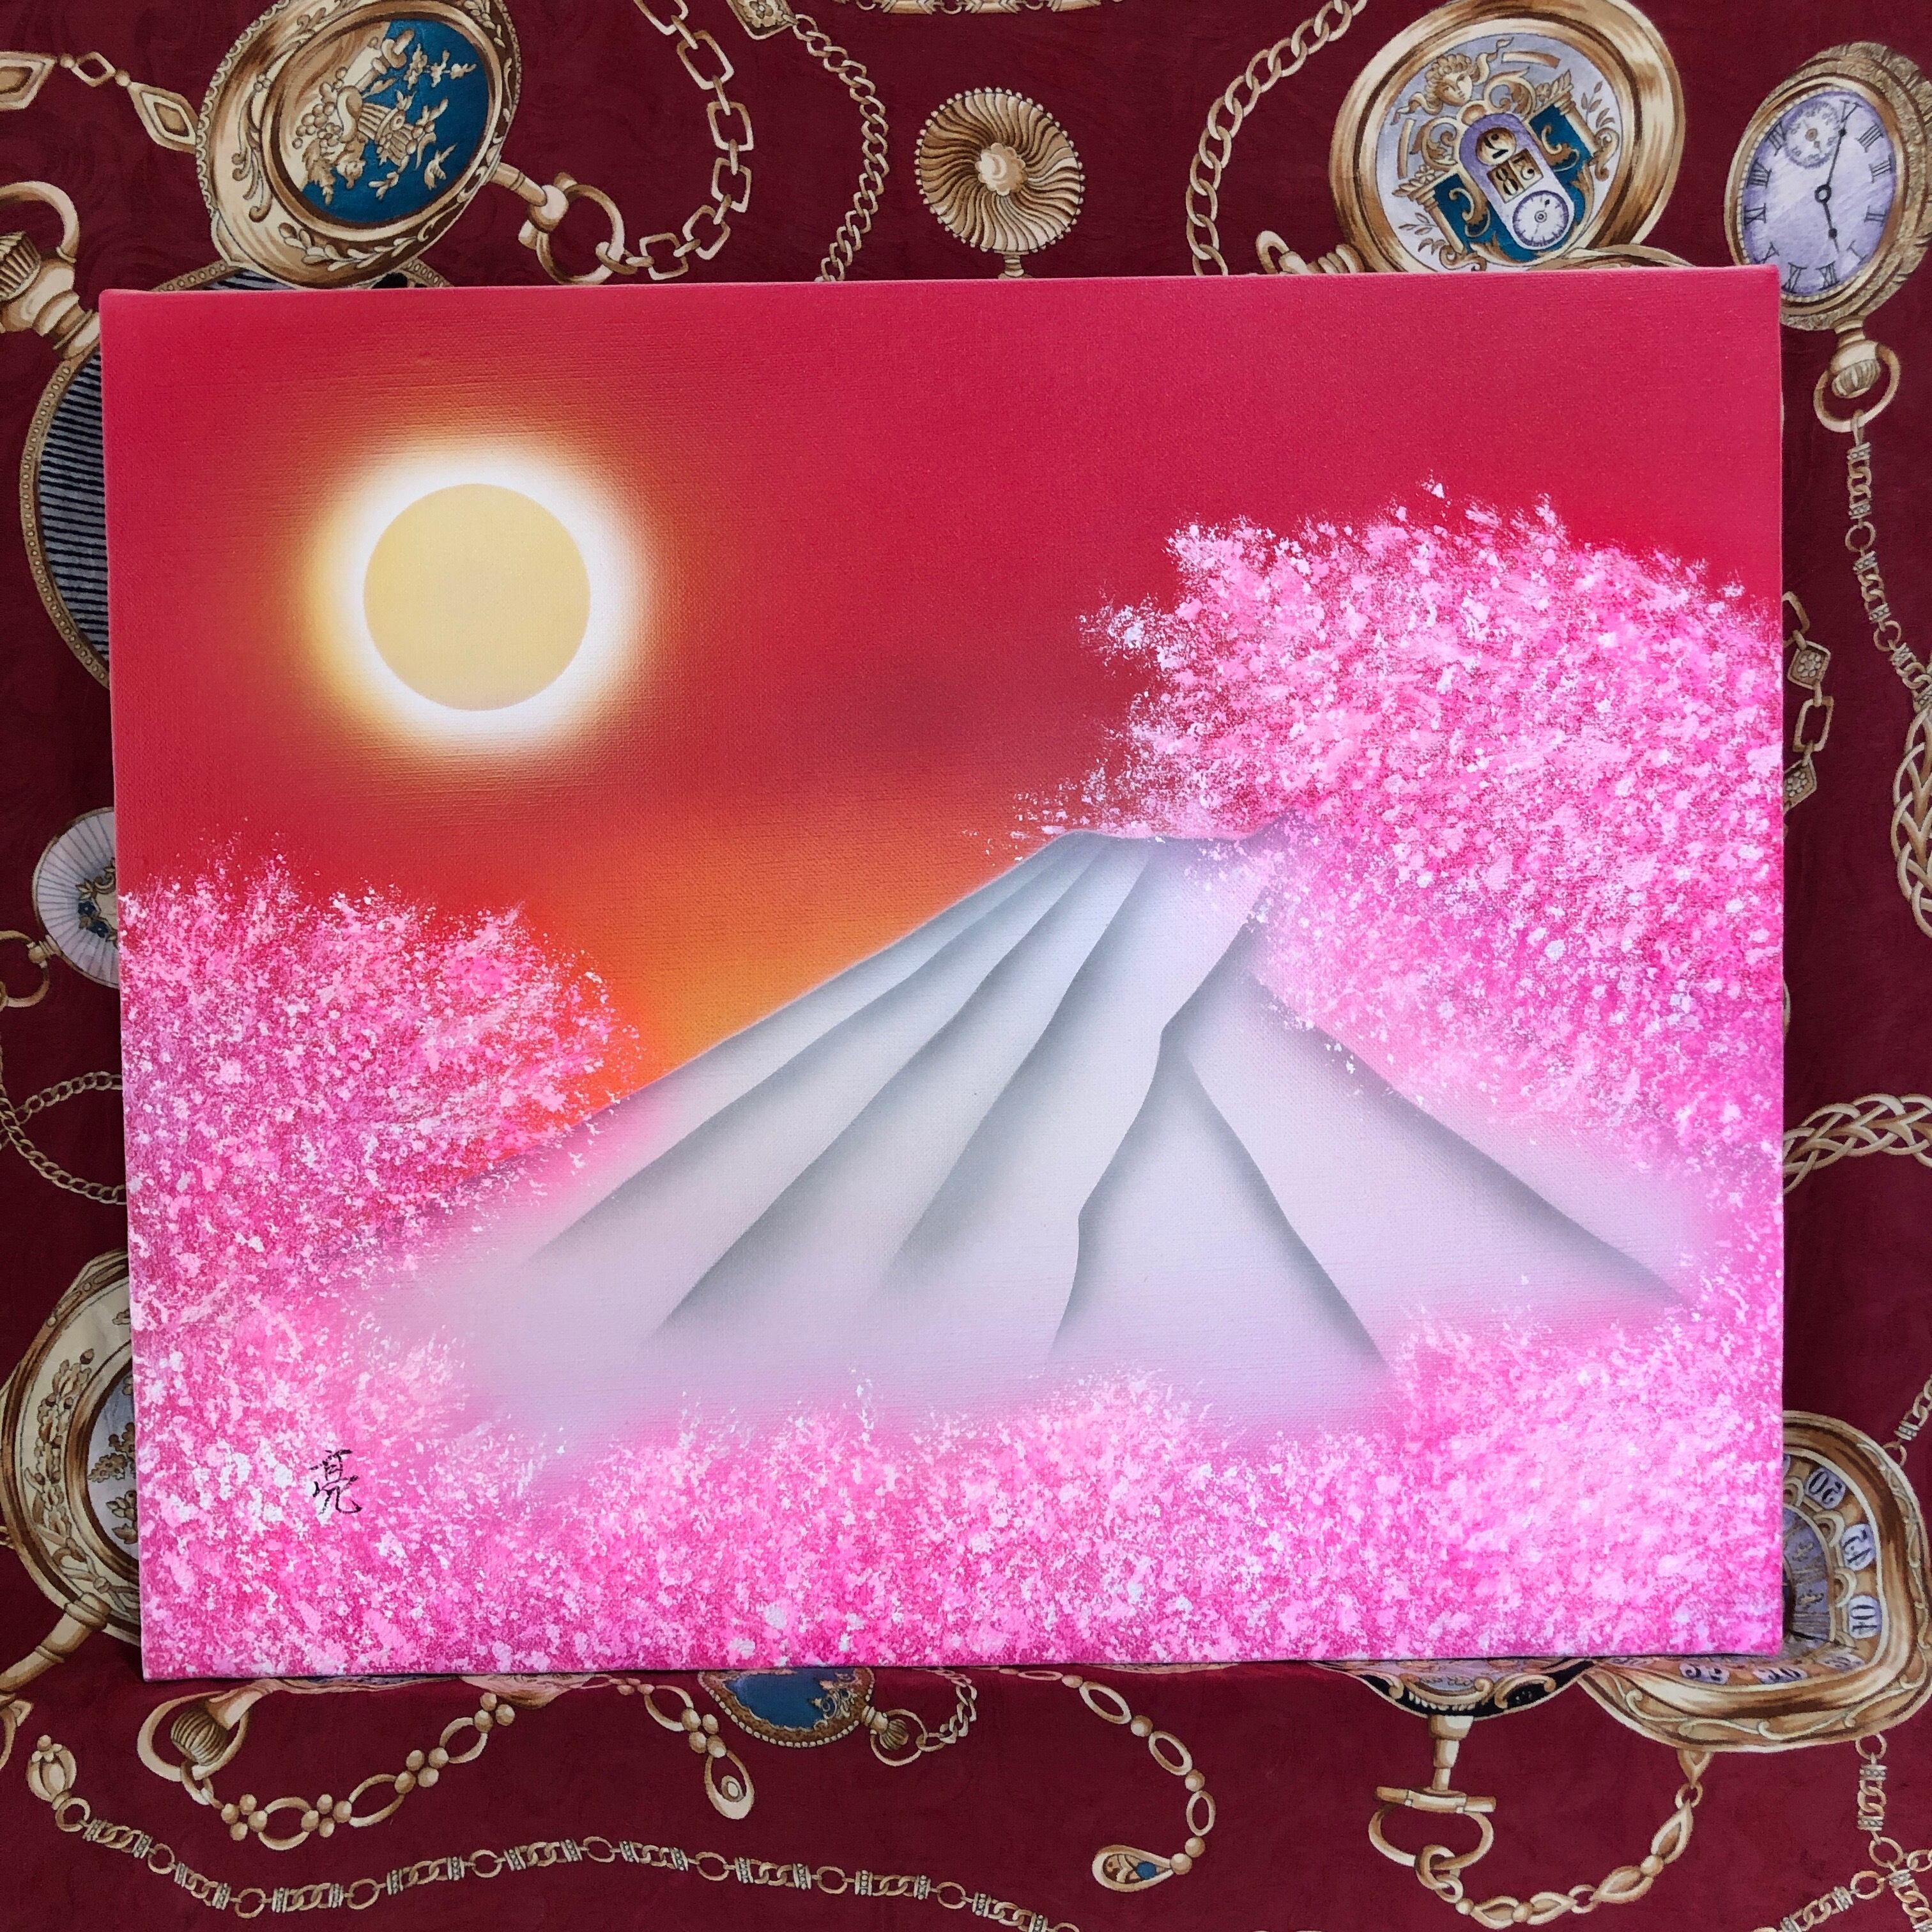 【大転換期セール】神秘的富士山・アメノミナカヌシ・金龍 色紙 強力波動絵画画材